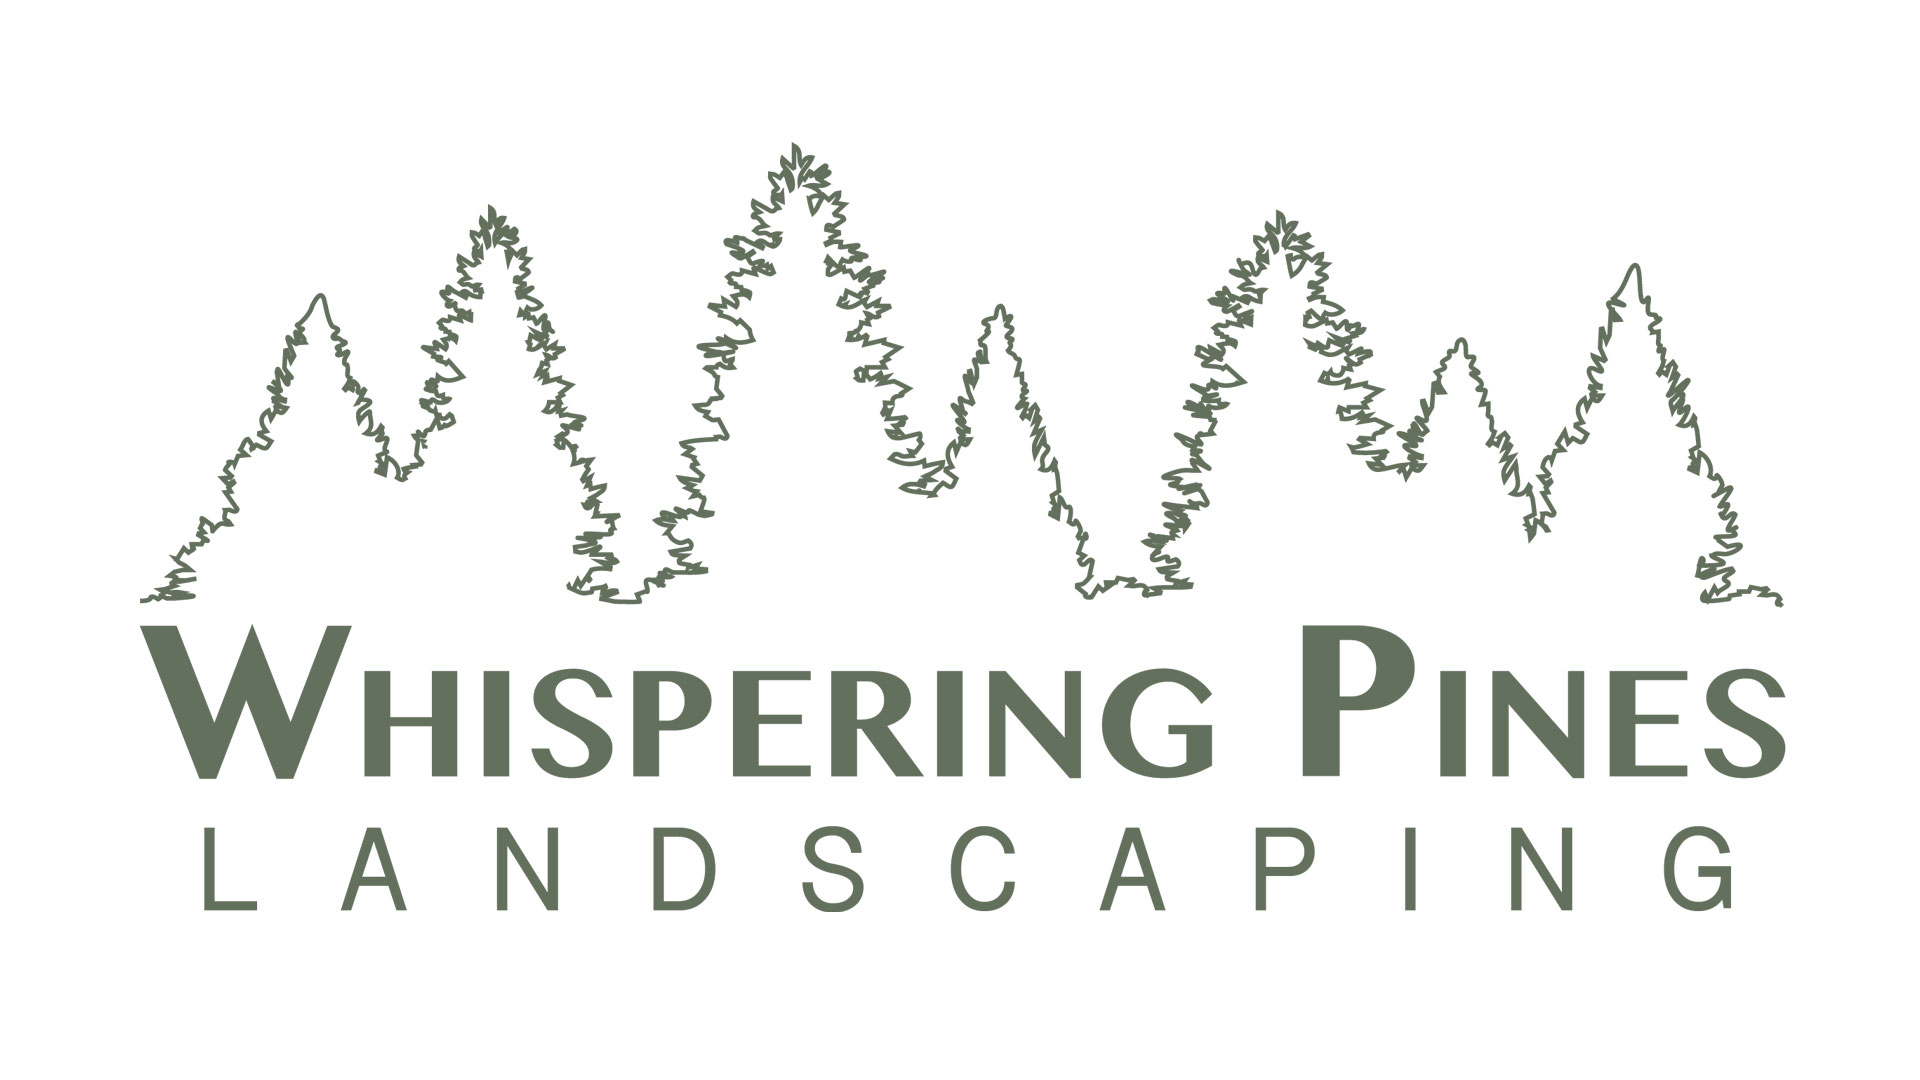 Whispering Pines logo